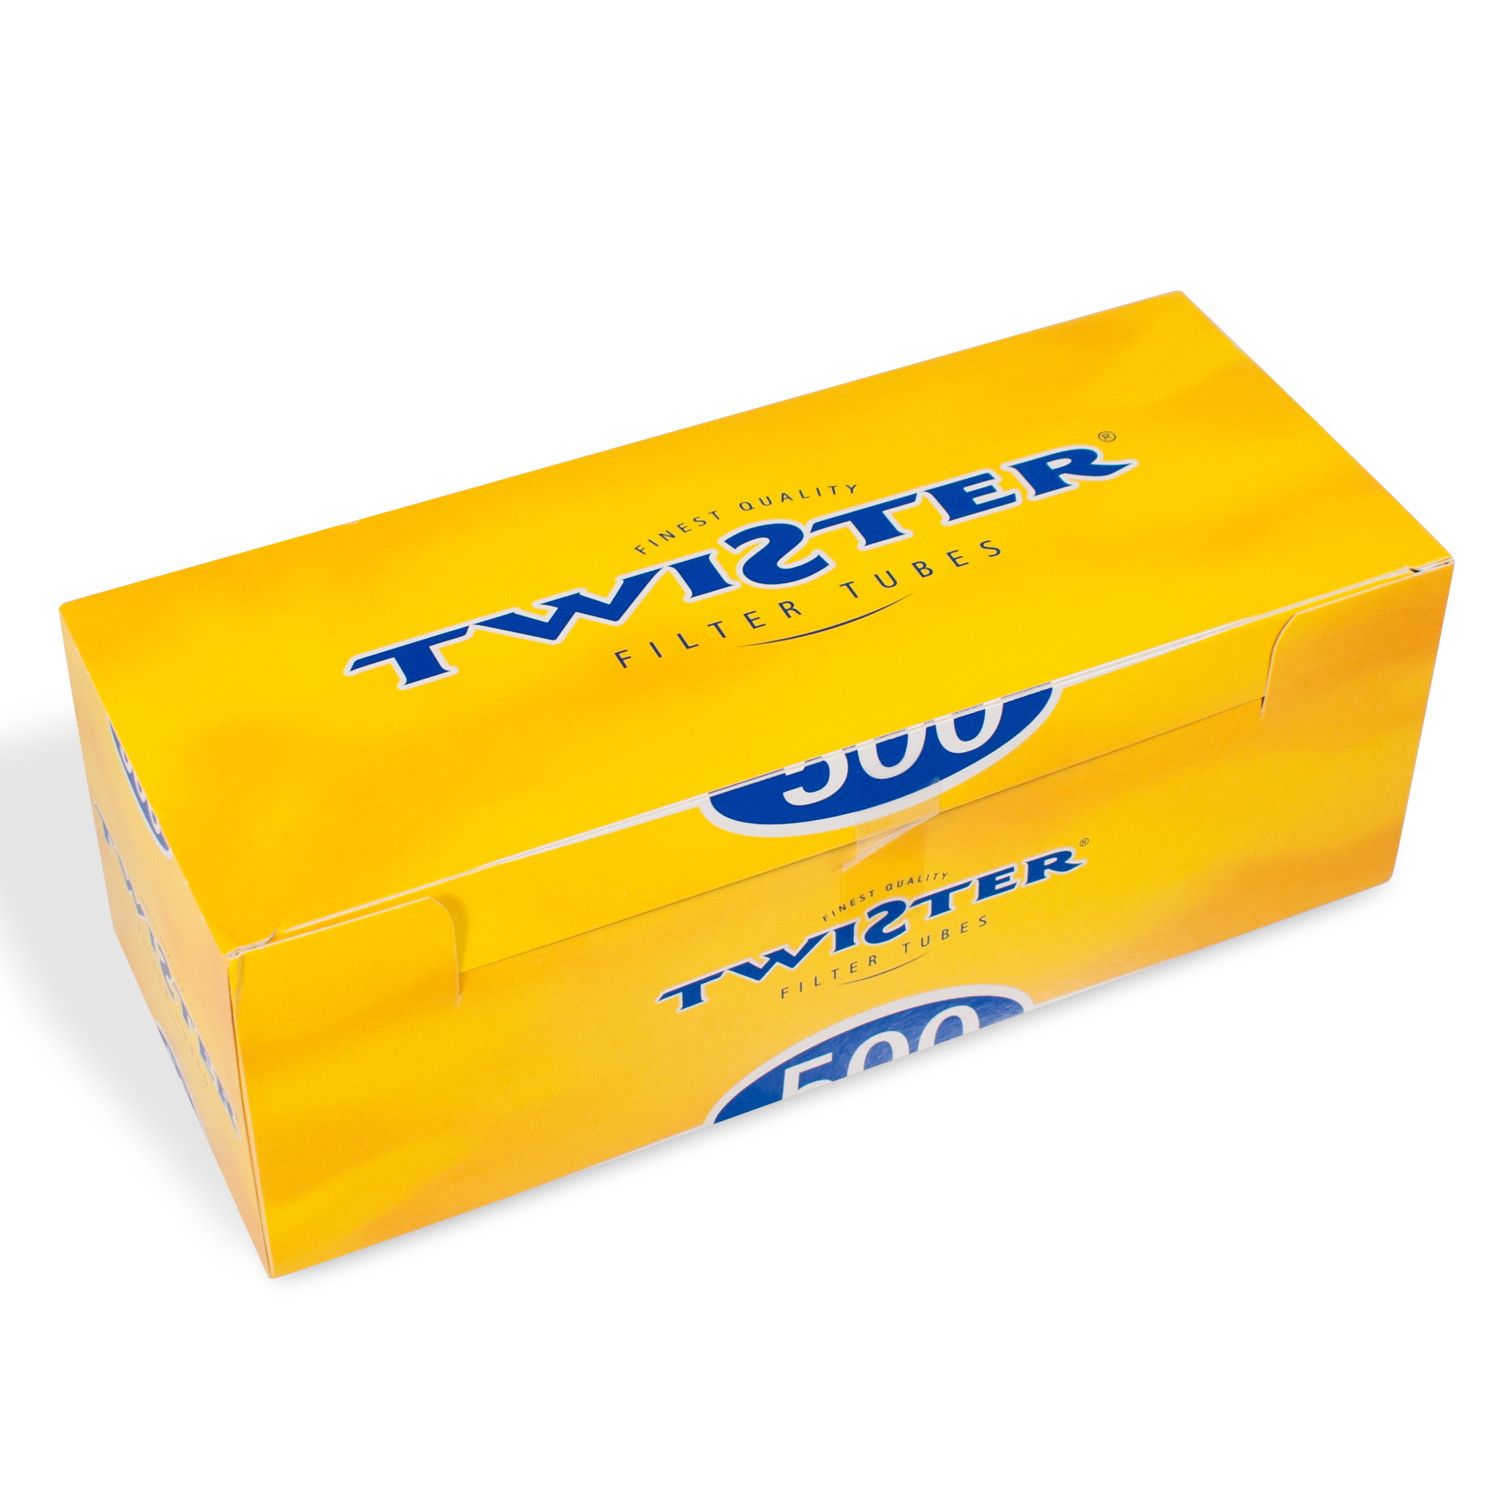 Twister Hülsen - Packung mit 500 Stück 